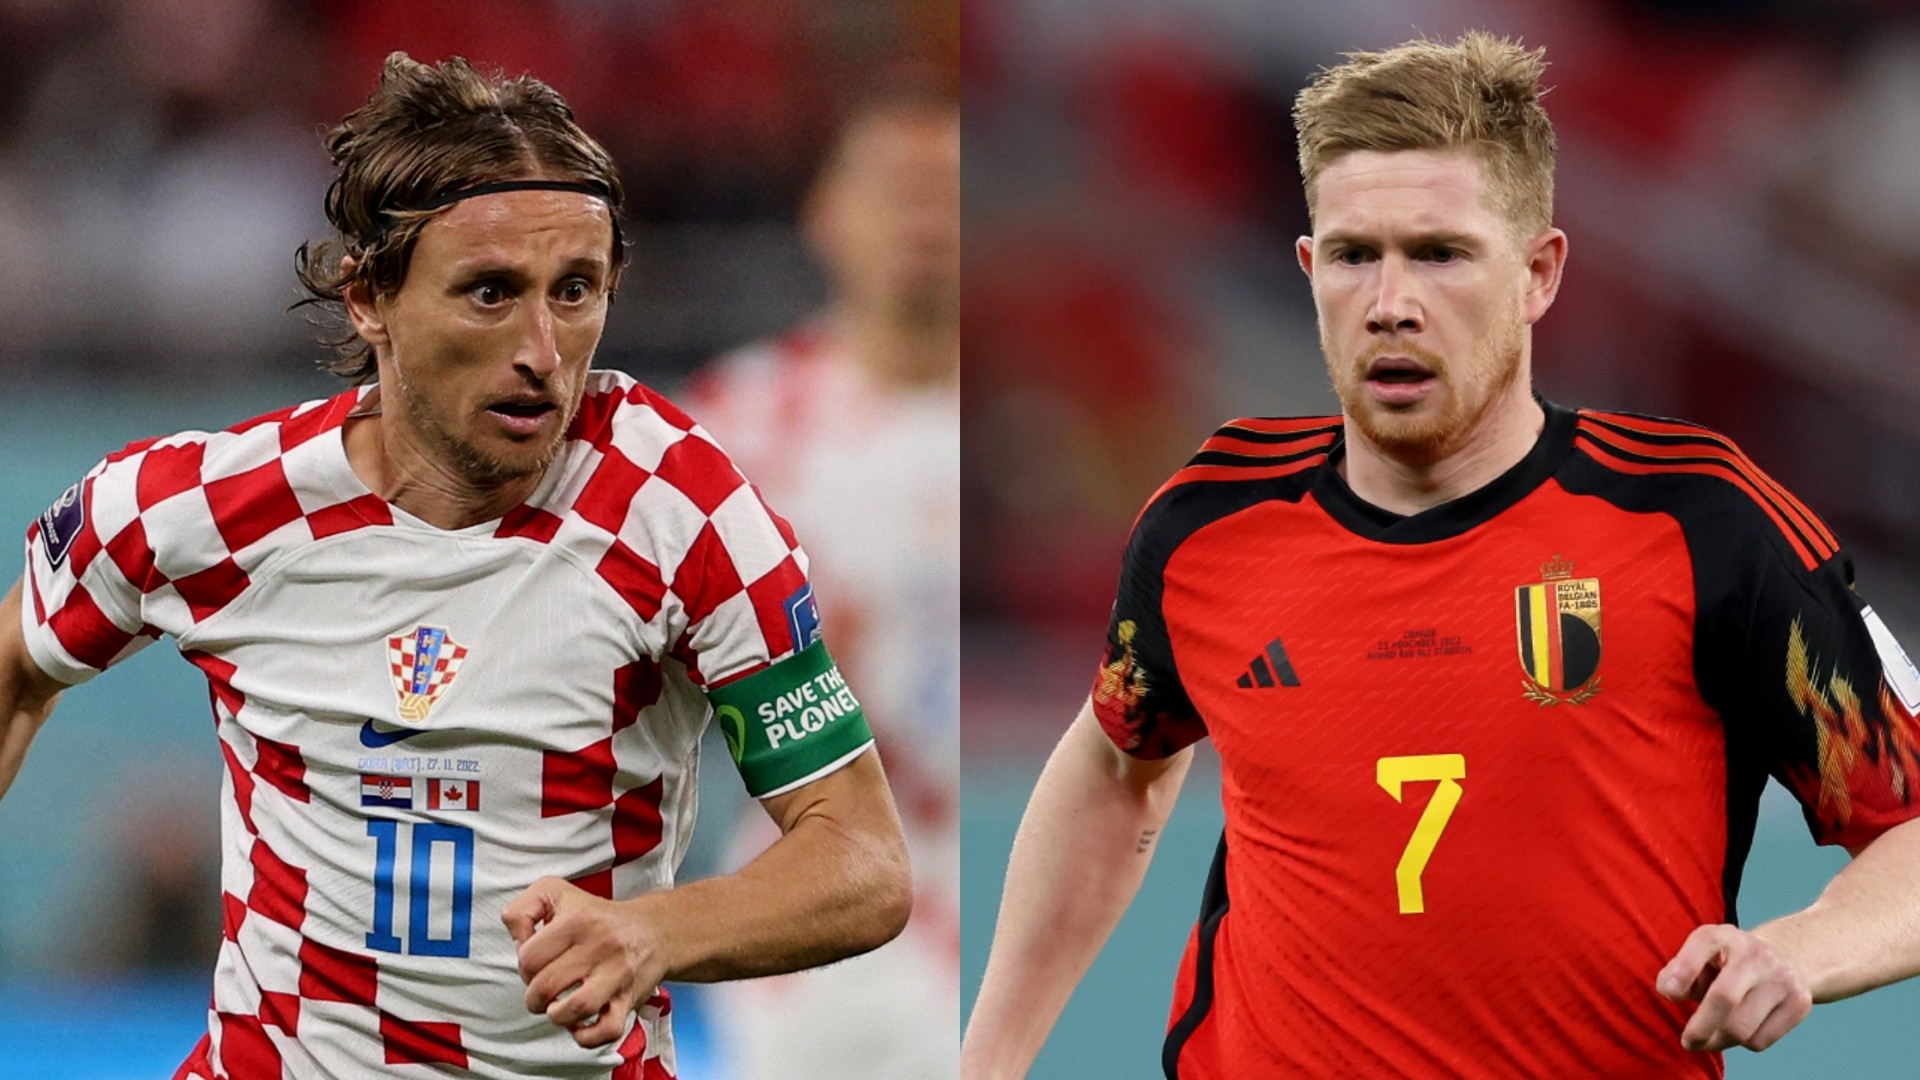 Formacionet zyrtare Kroaci-Belgjikë: Lukaku dhe Hazard nga stoli, starton Mertens